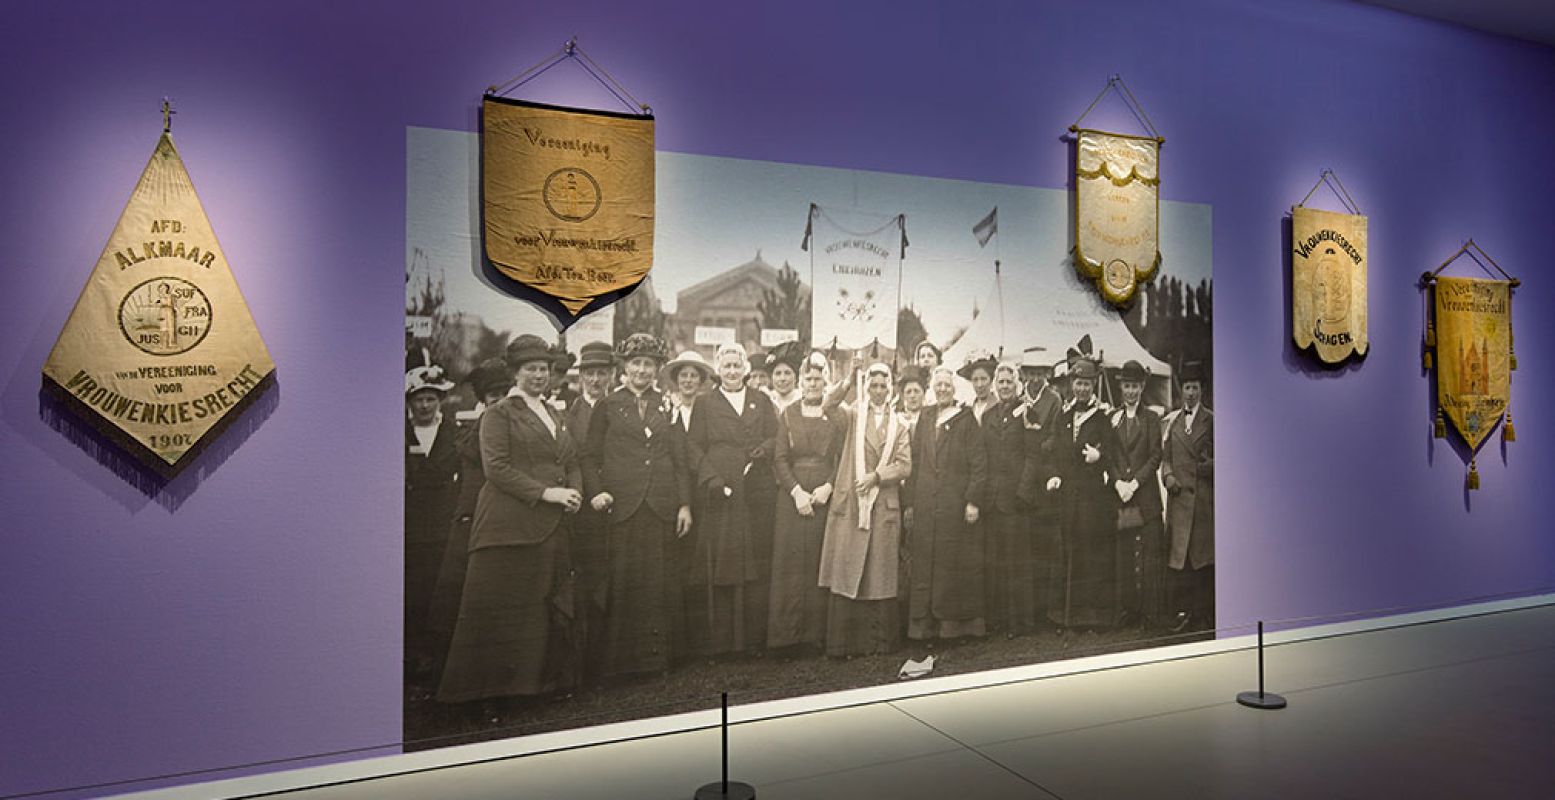 Enkele van de vrouwen die voor het vrouwenkiesrecht streden. Nu levensgroot te zien in het Groninger Museum in een speciale expositie. Foto: Groninger Museum / Marten de Leeuw